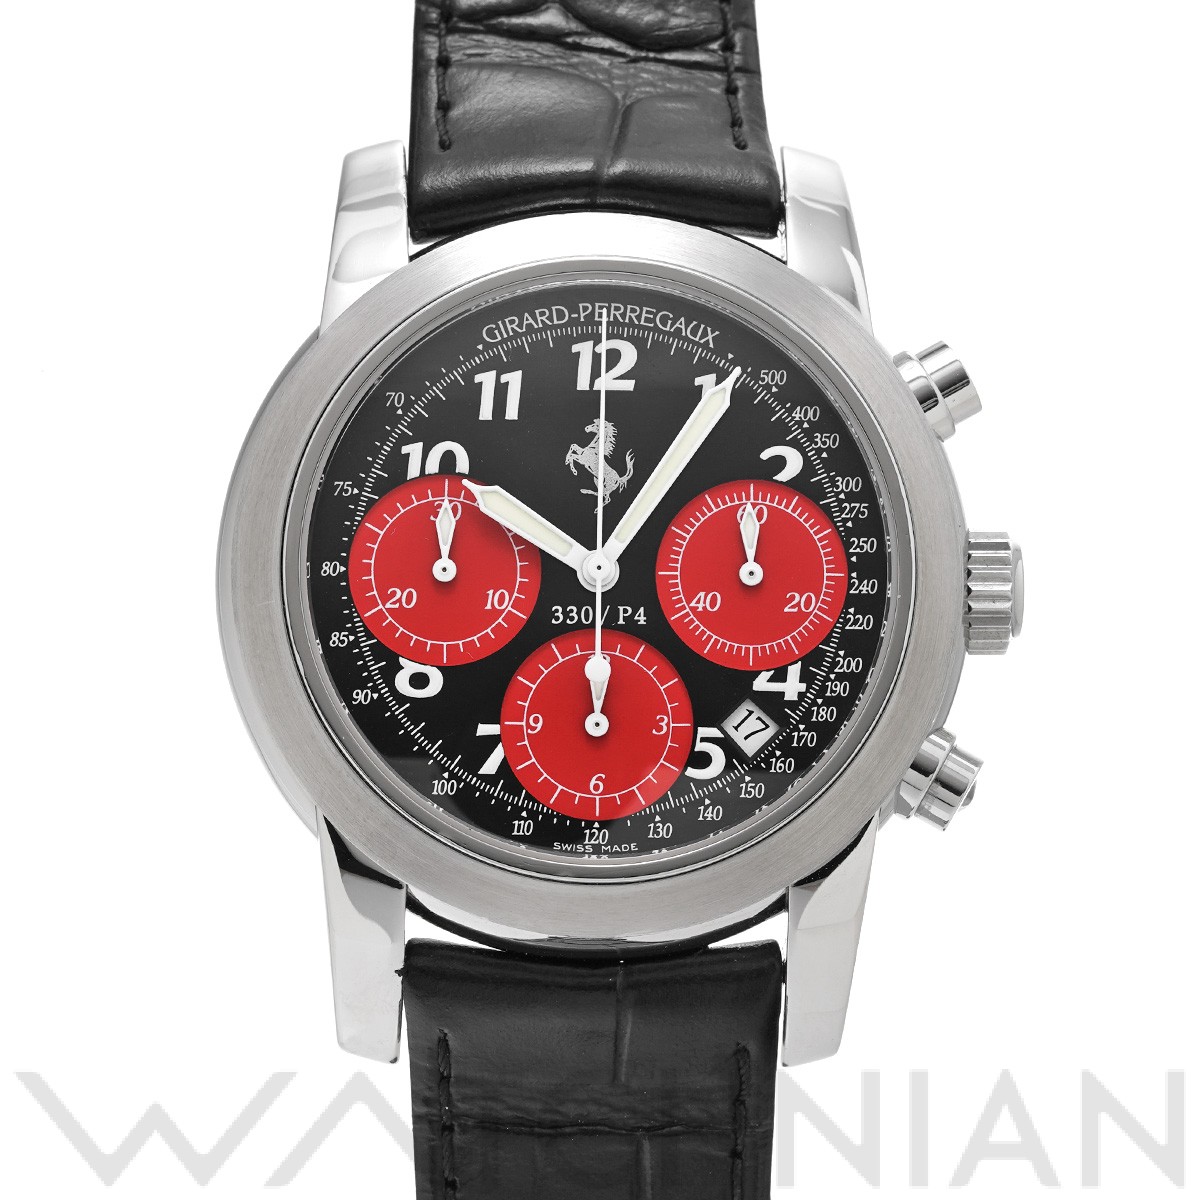 ジラール ペルゴ / GIRARD-PERREGAUX フェラーリ 330/P4 クロノグラフ 80280.0.11.6059 ブラック/レッド  メンズ 時計 【中古】【wristwatch】